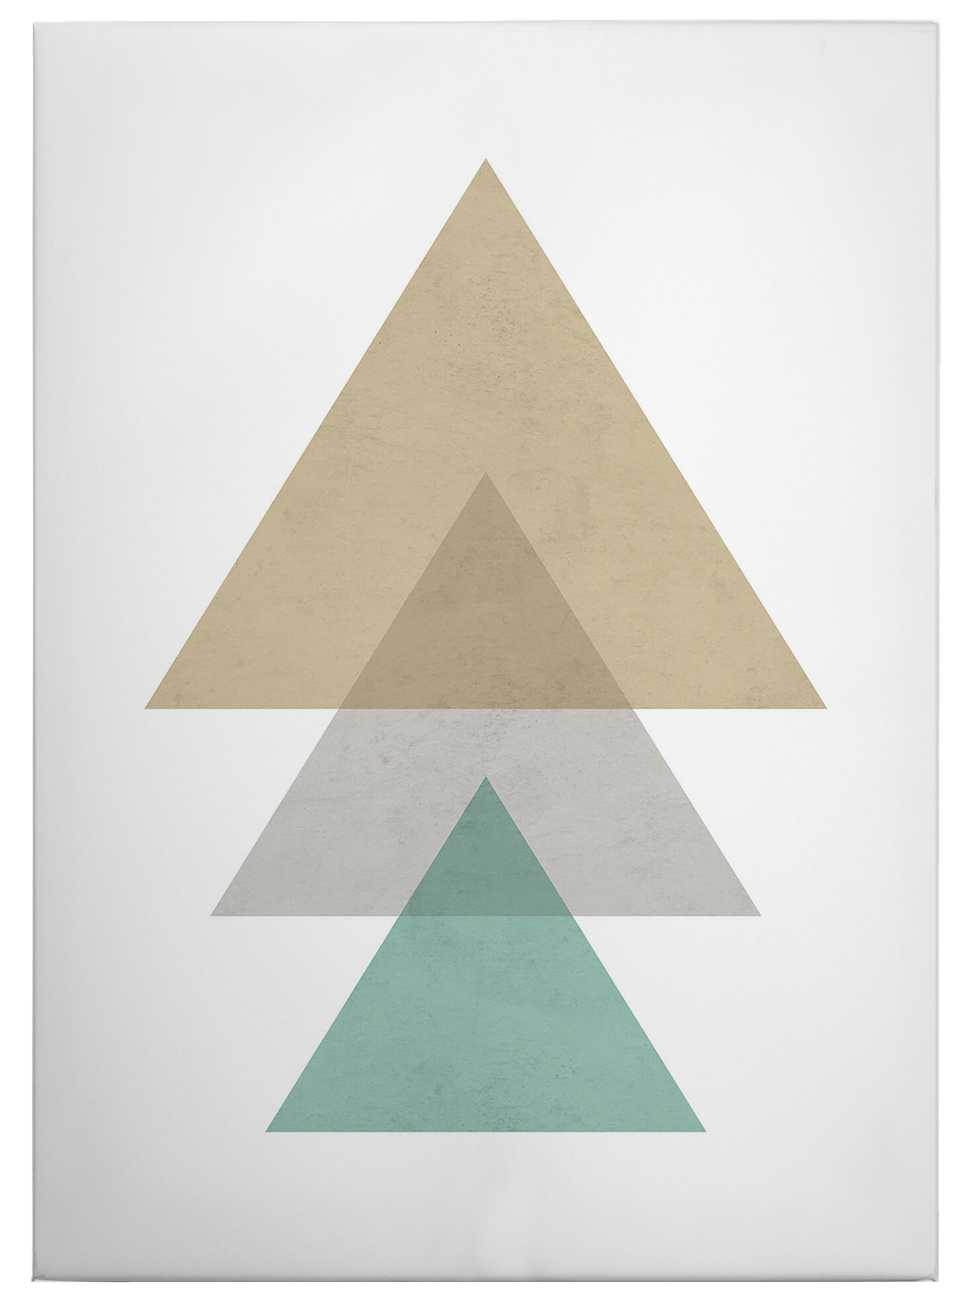             Leinwandbild Muster aus Dreiecken – 0,50 m x 0,70 m
        